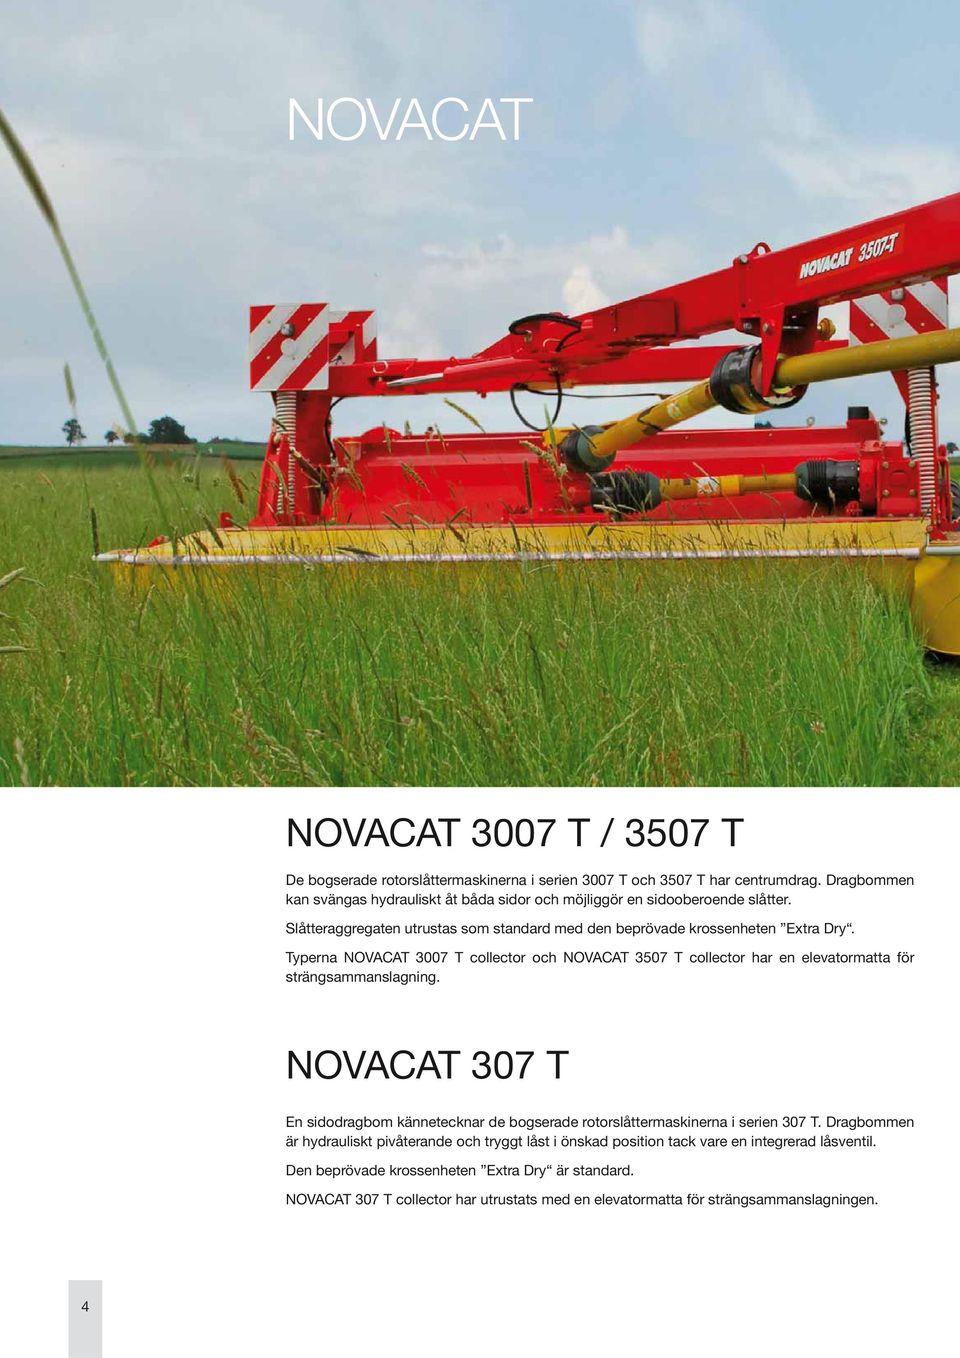 Typerna NOVACAT 3007 T collector och NOVACAT 3507 T collector har en elevatormatta för strängsammanslagning.